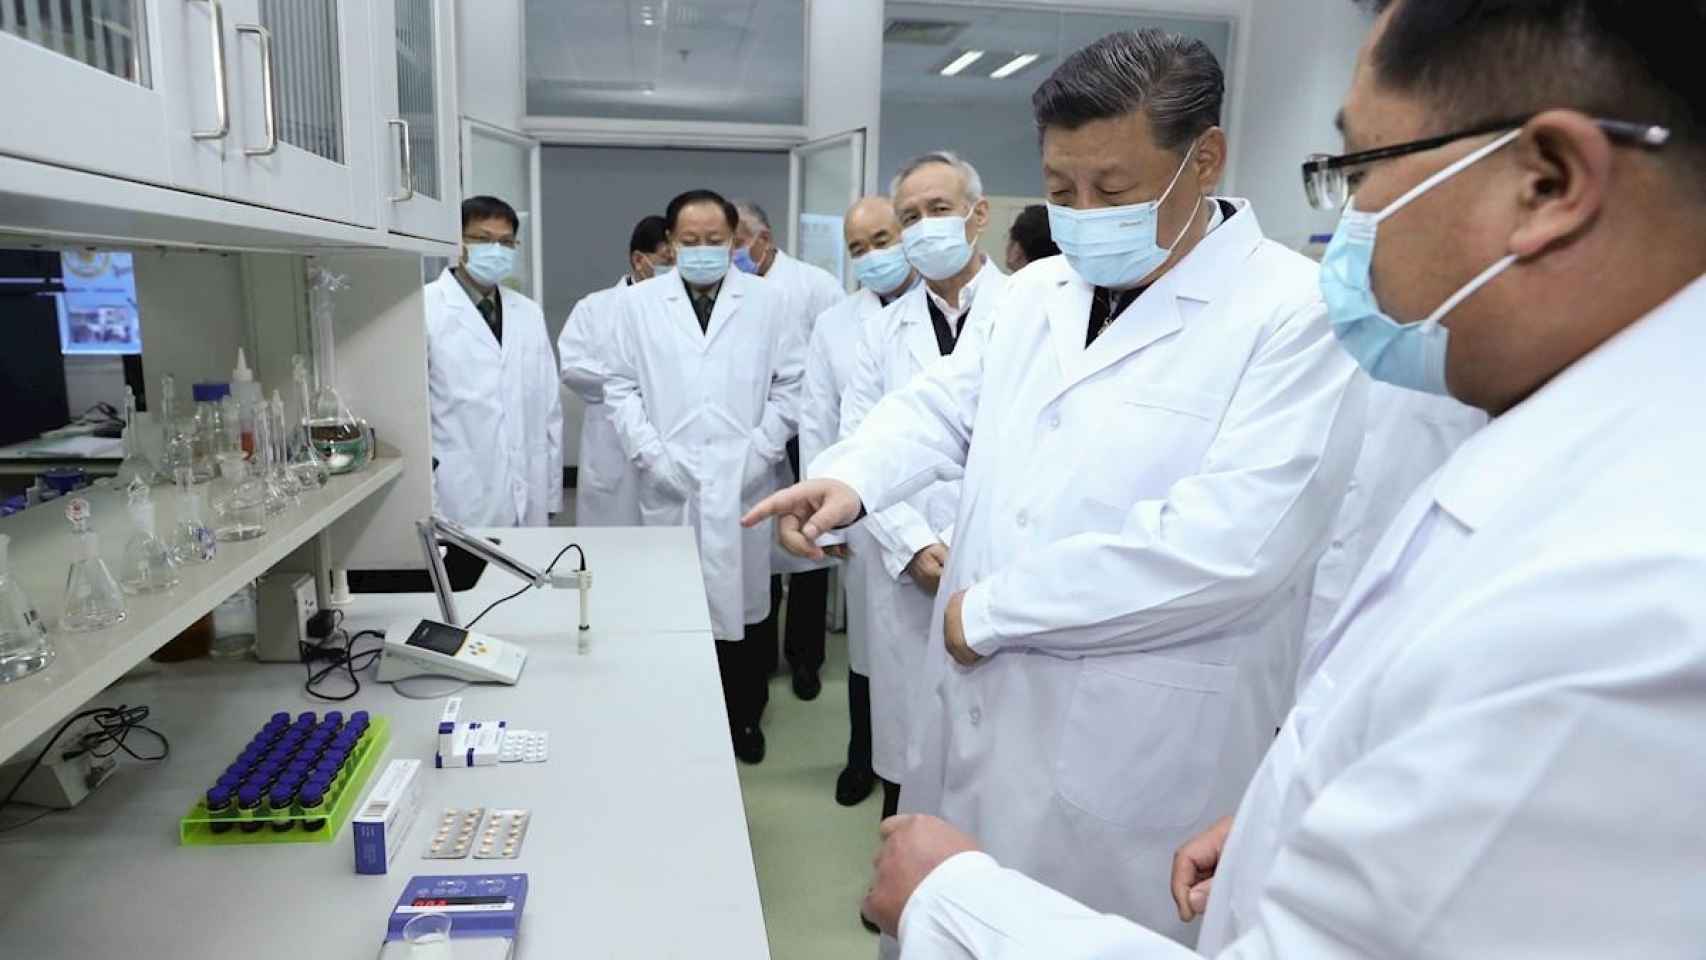 El presidente de China, Xi Jinping, visita un laboratorio donde ensayan medicamentos contra el coronavirus / EFE